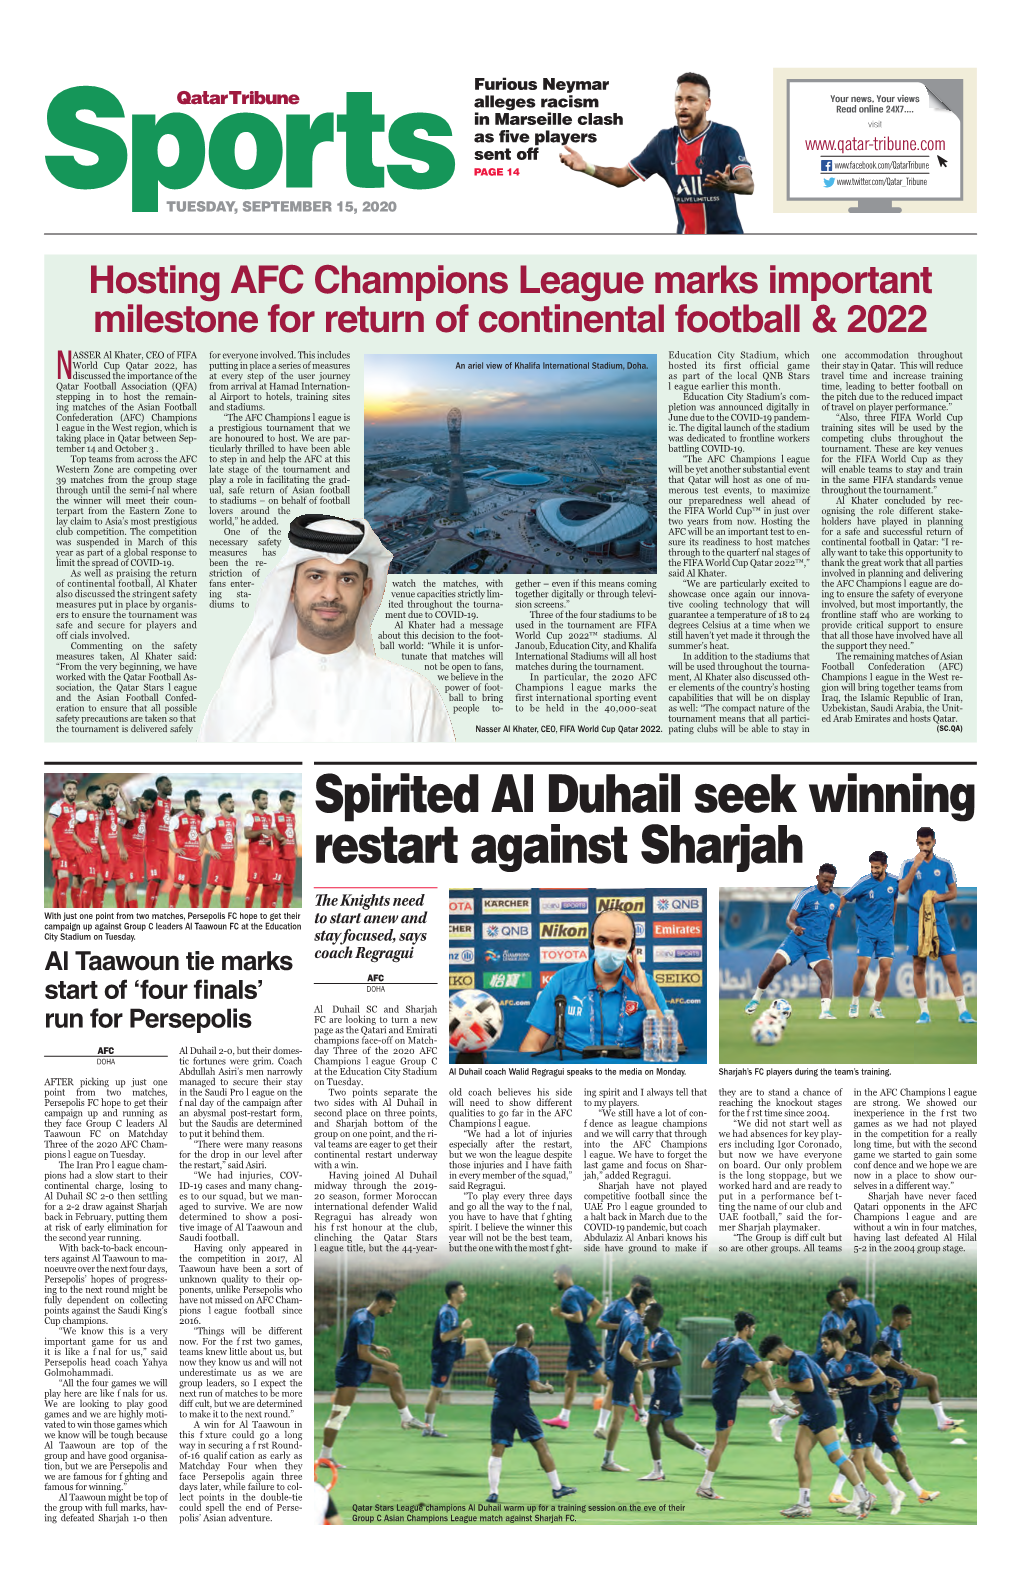 Spirited Al Duhail Seek Winning Restart Against Sharjah